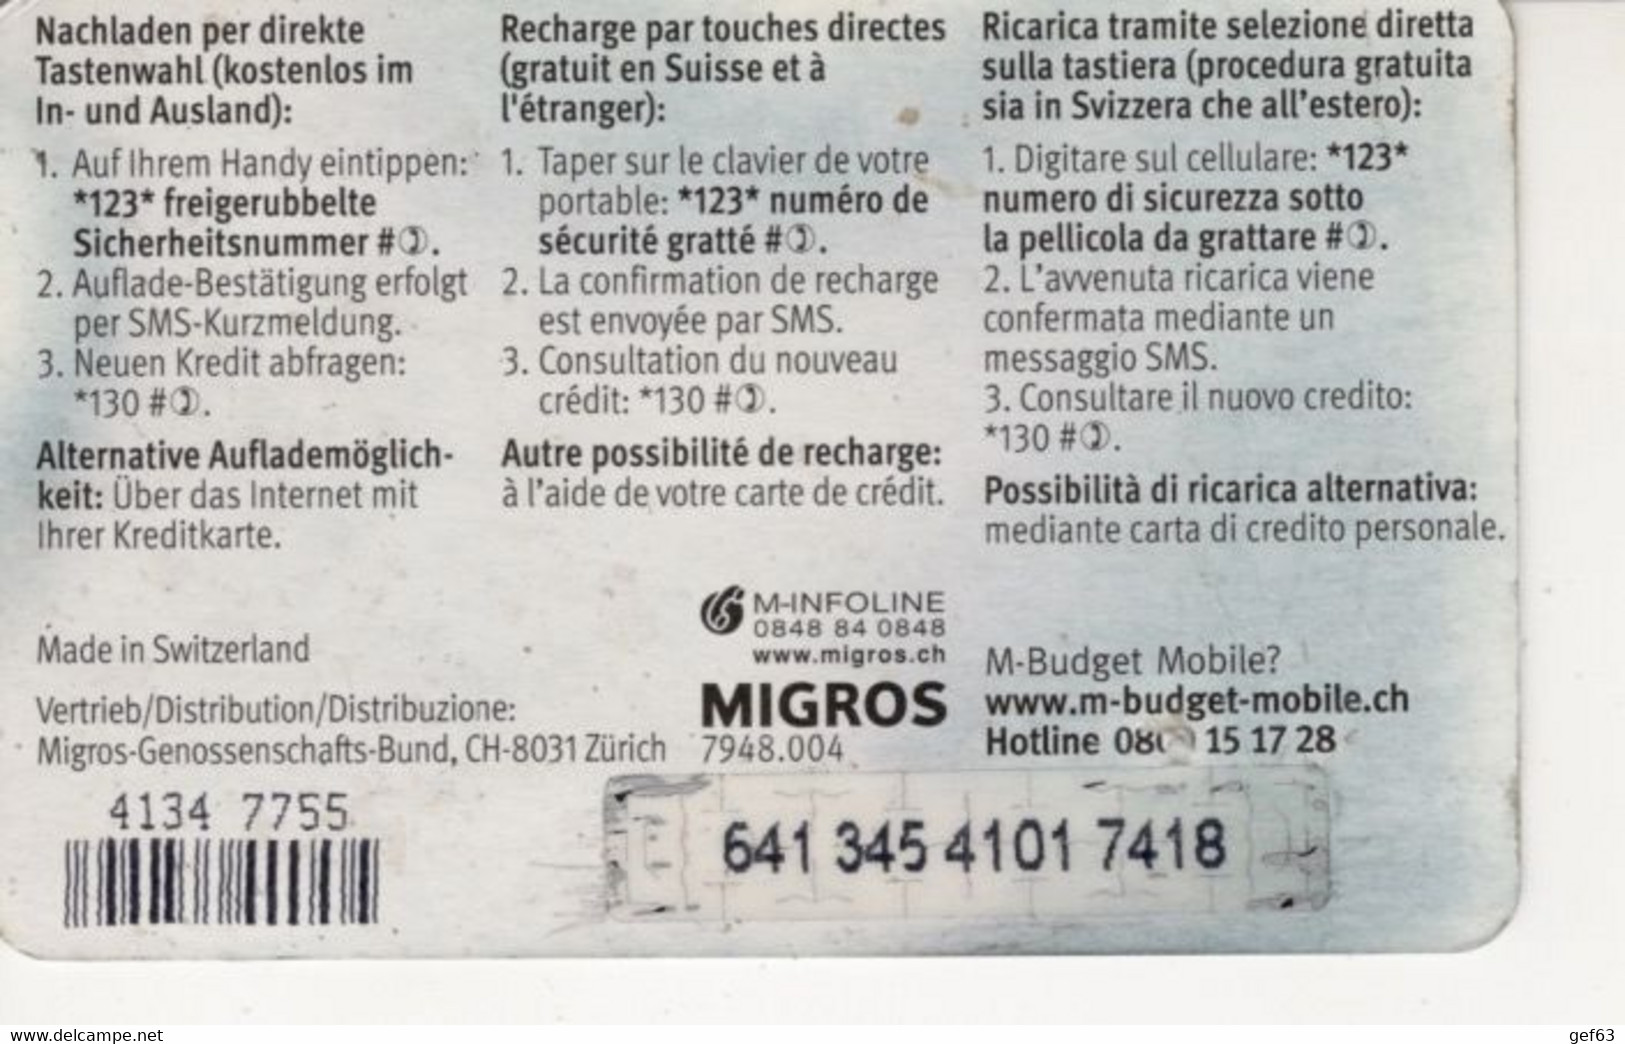 Migros - M-Budget Mobile - Mobile Value Card 10 CHF - Telecom